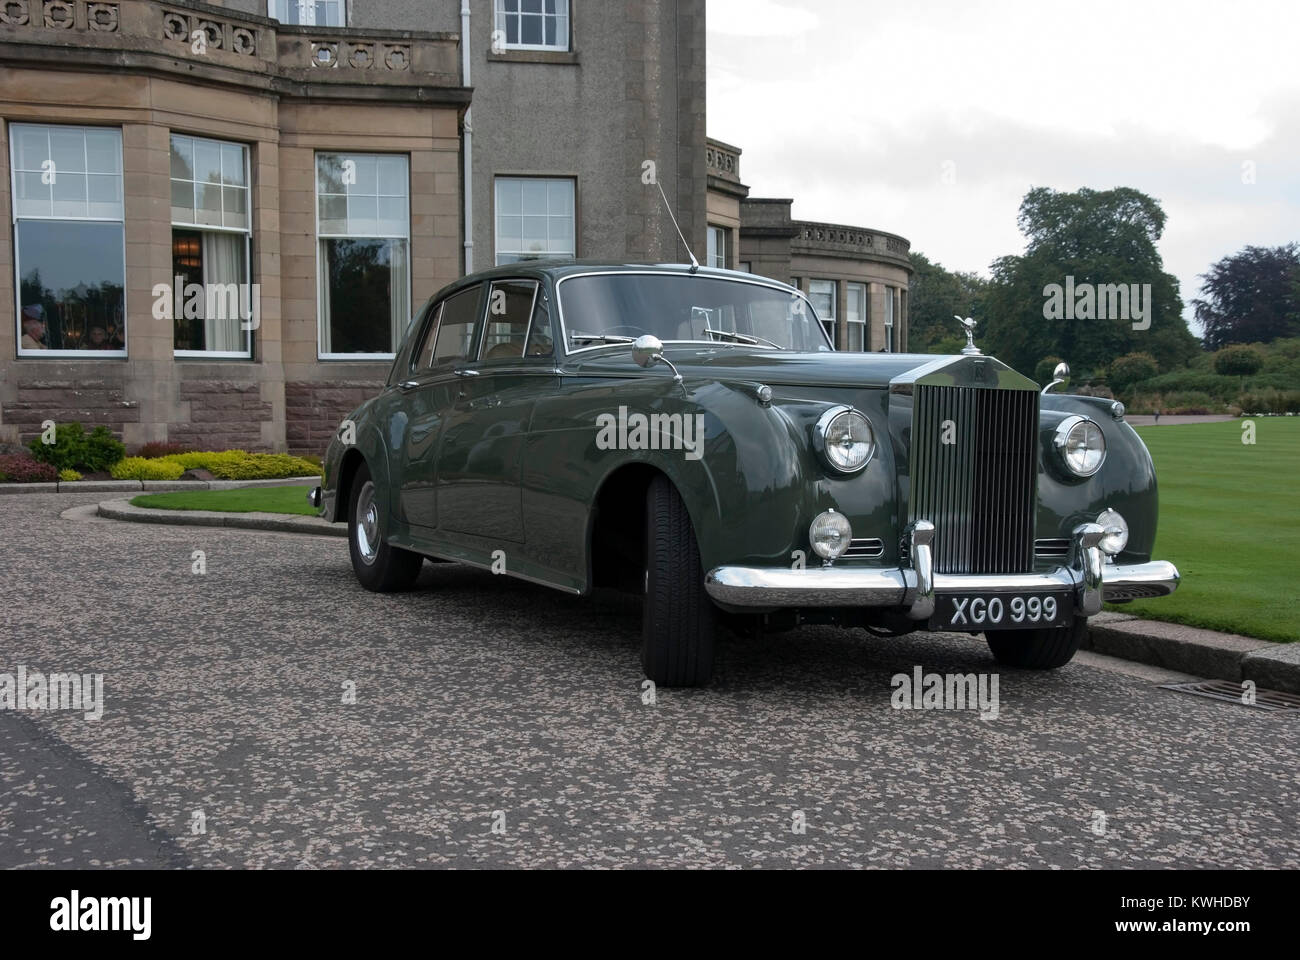 1959 vert foncé modèle Rolls Royce Silver Cloud II exotiques de luxe voiture automobile véhicule britannique de l'hôtel Gleneagles Auchterarder Perthshire Scotland U.K. Banque D'Images